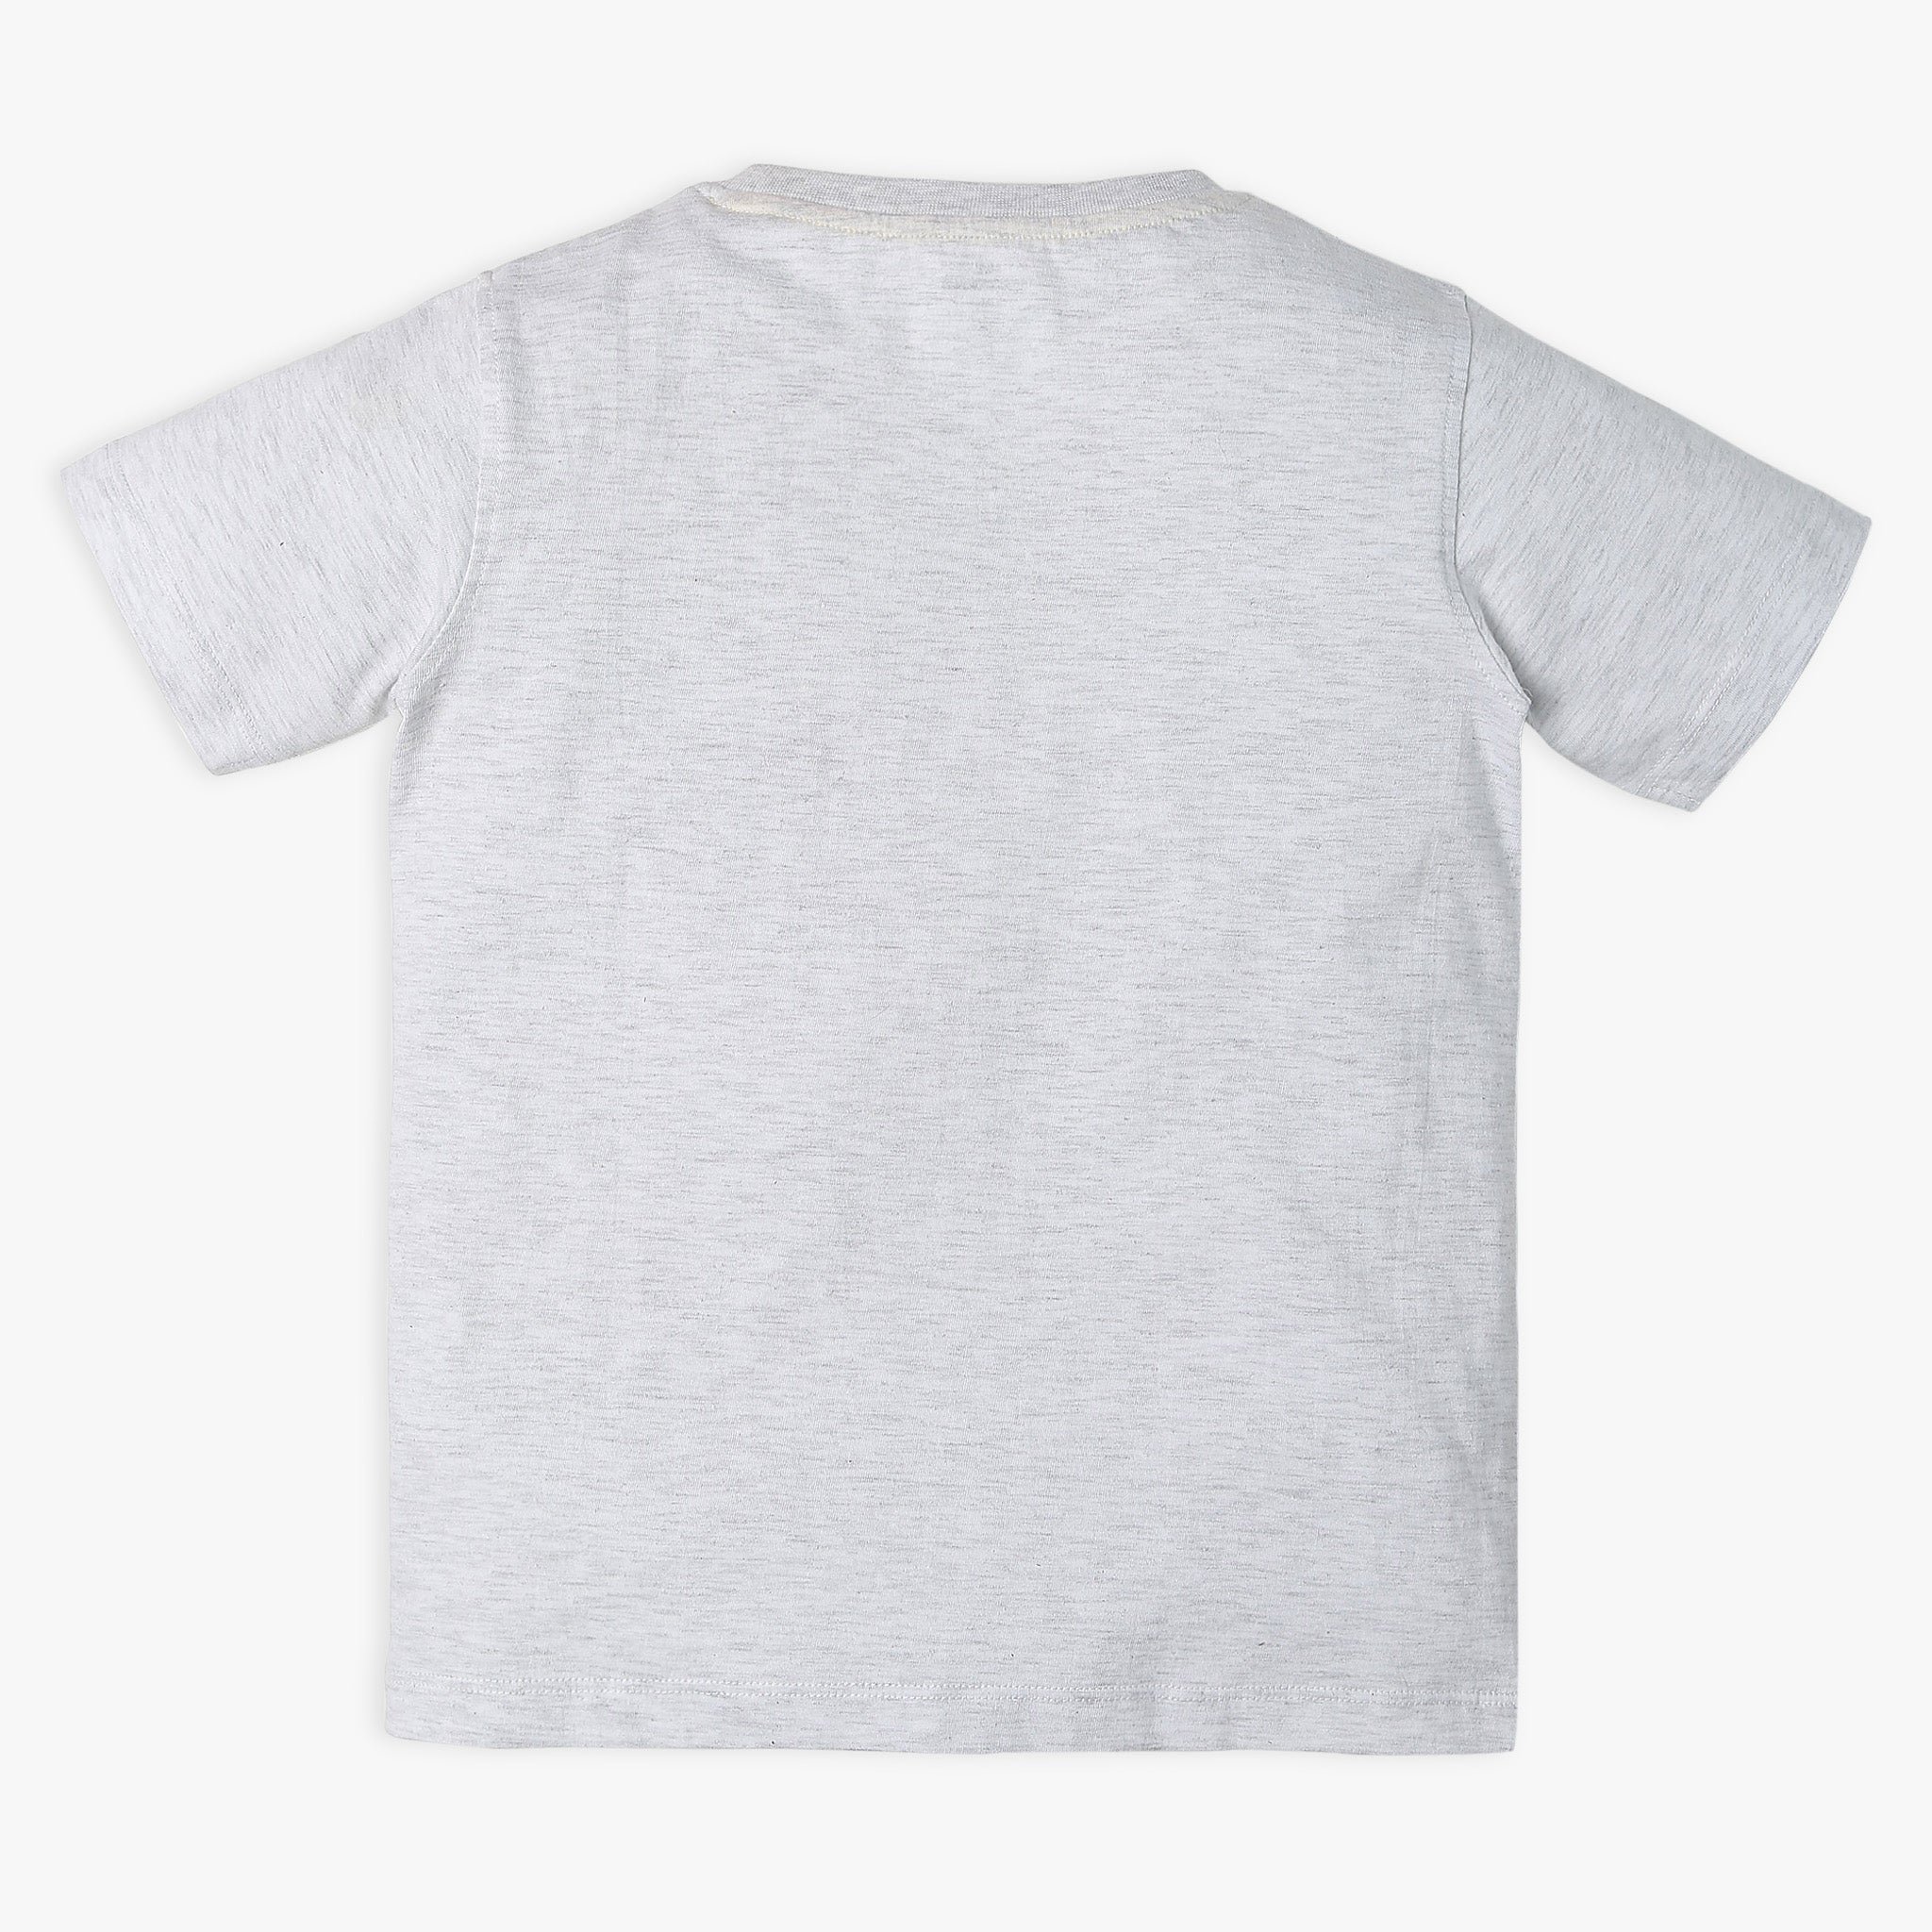 Boy Wearing Boy's Regular Fit Printed T-Shirt